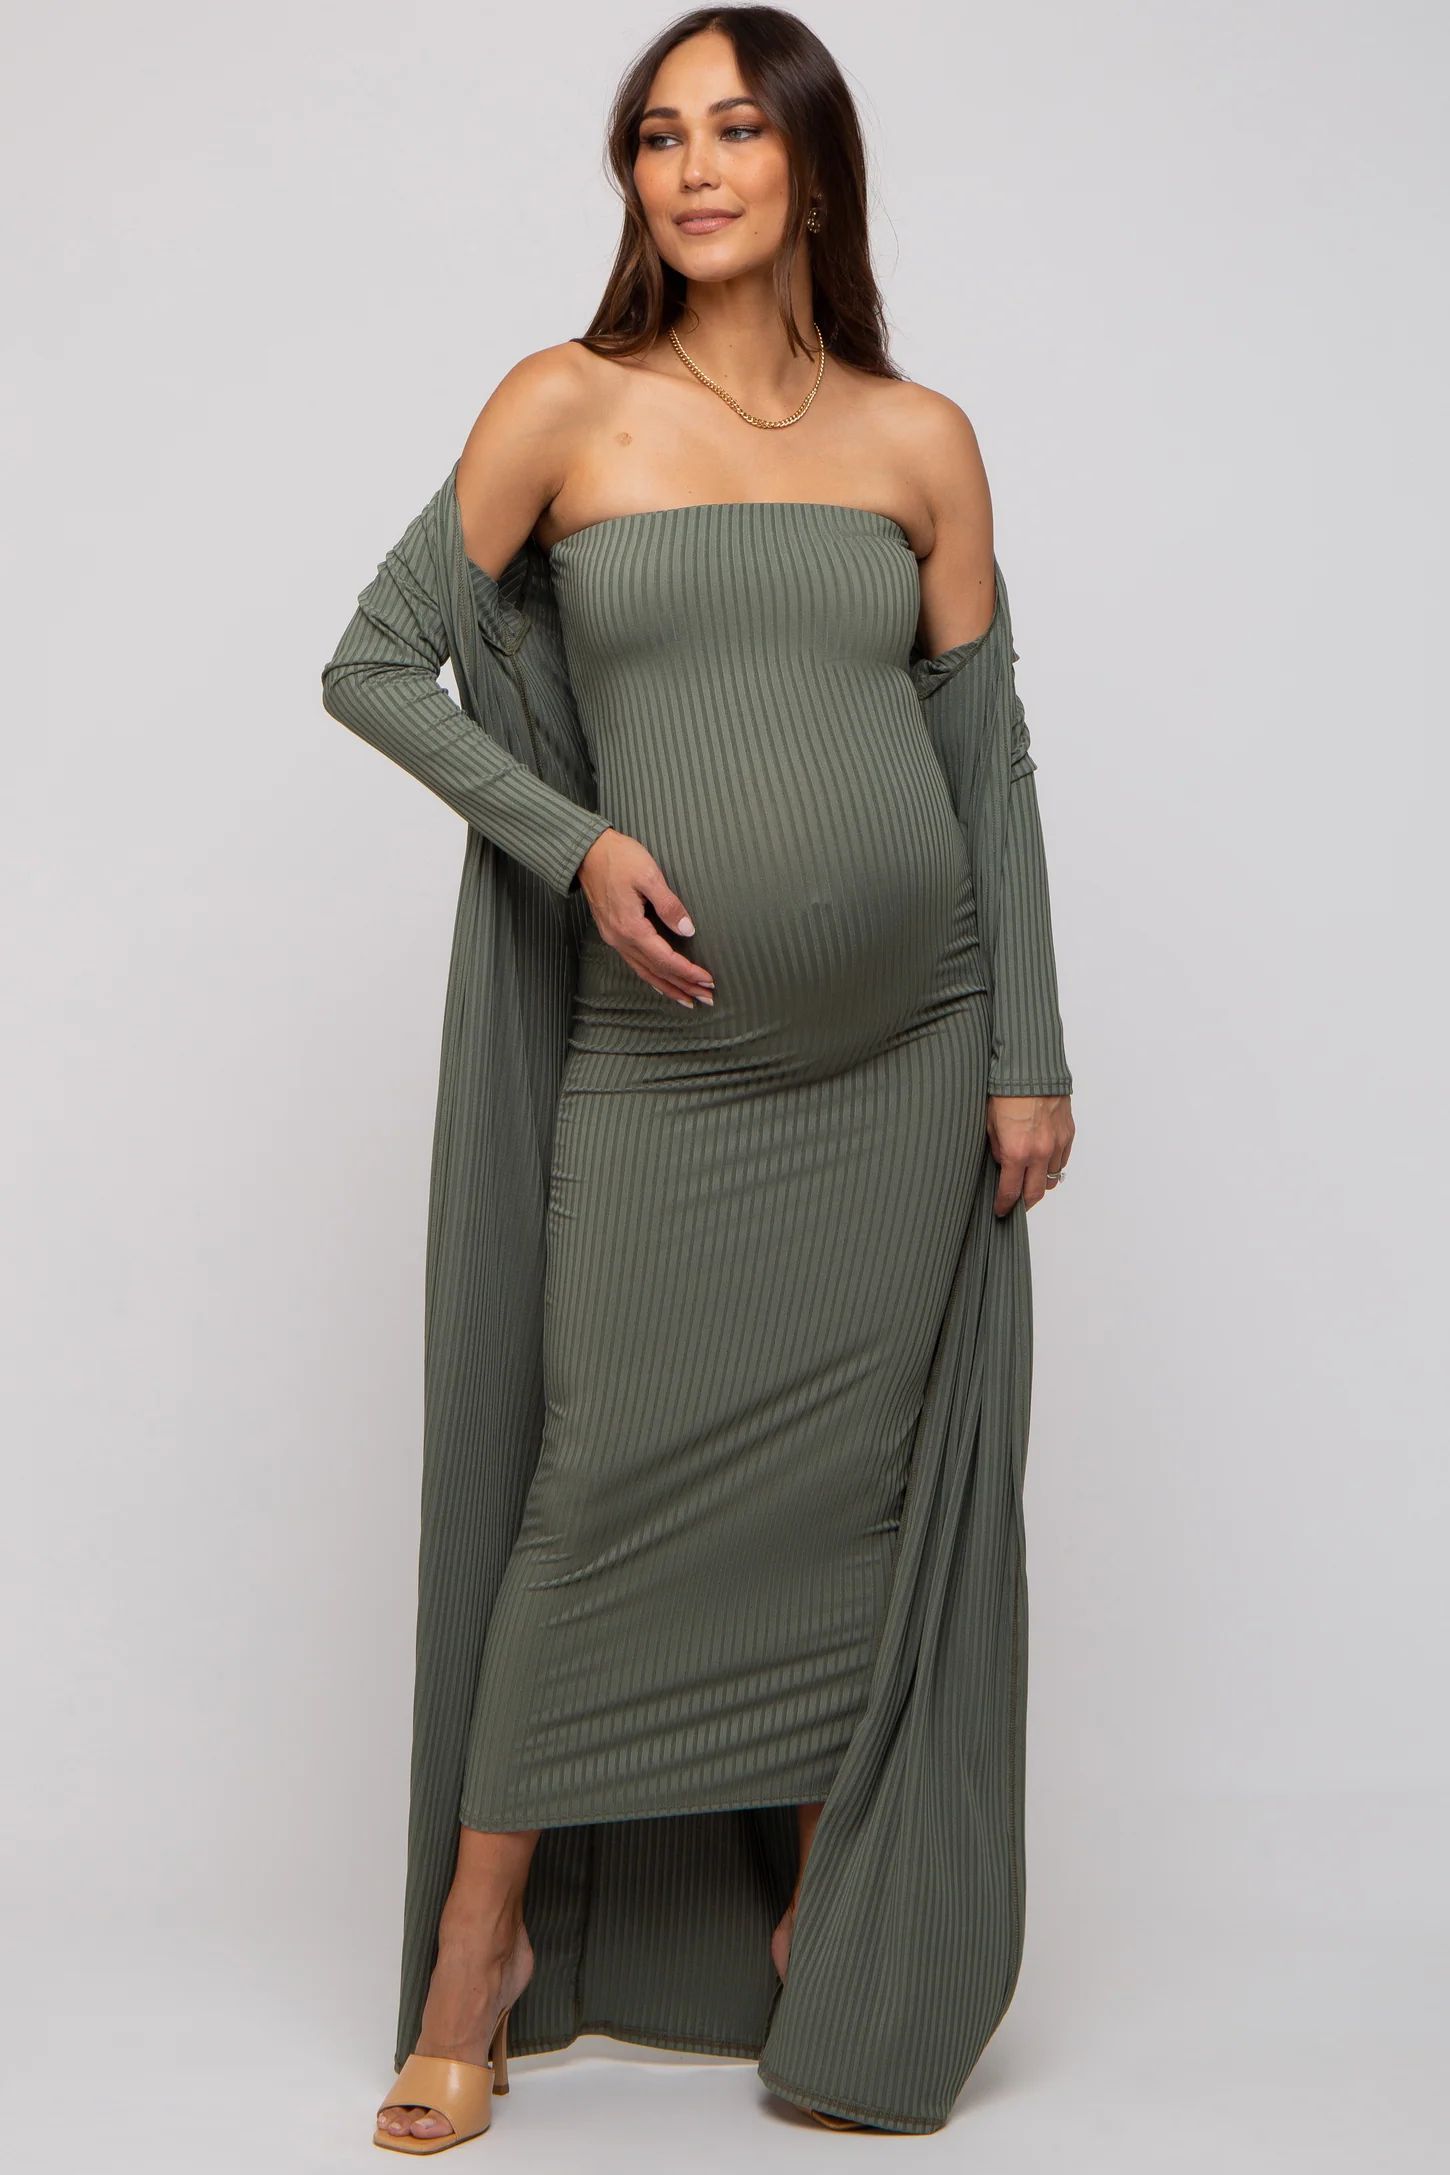 Olive Ribbed Sleeveless Dress Cardigan Maternity Set | PinkBlush Maternity